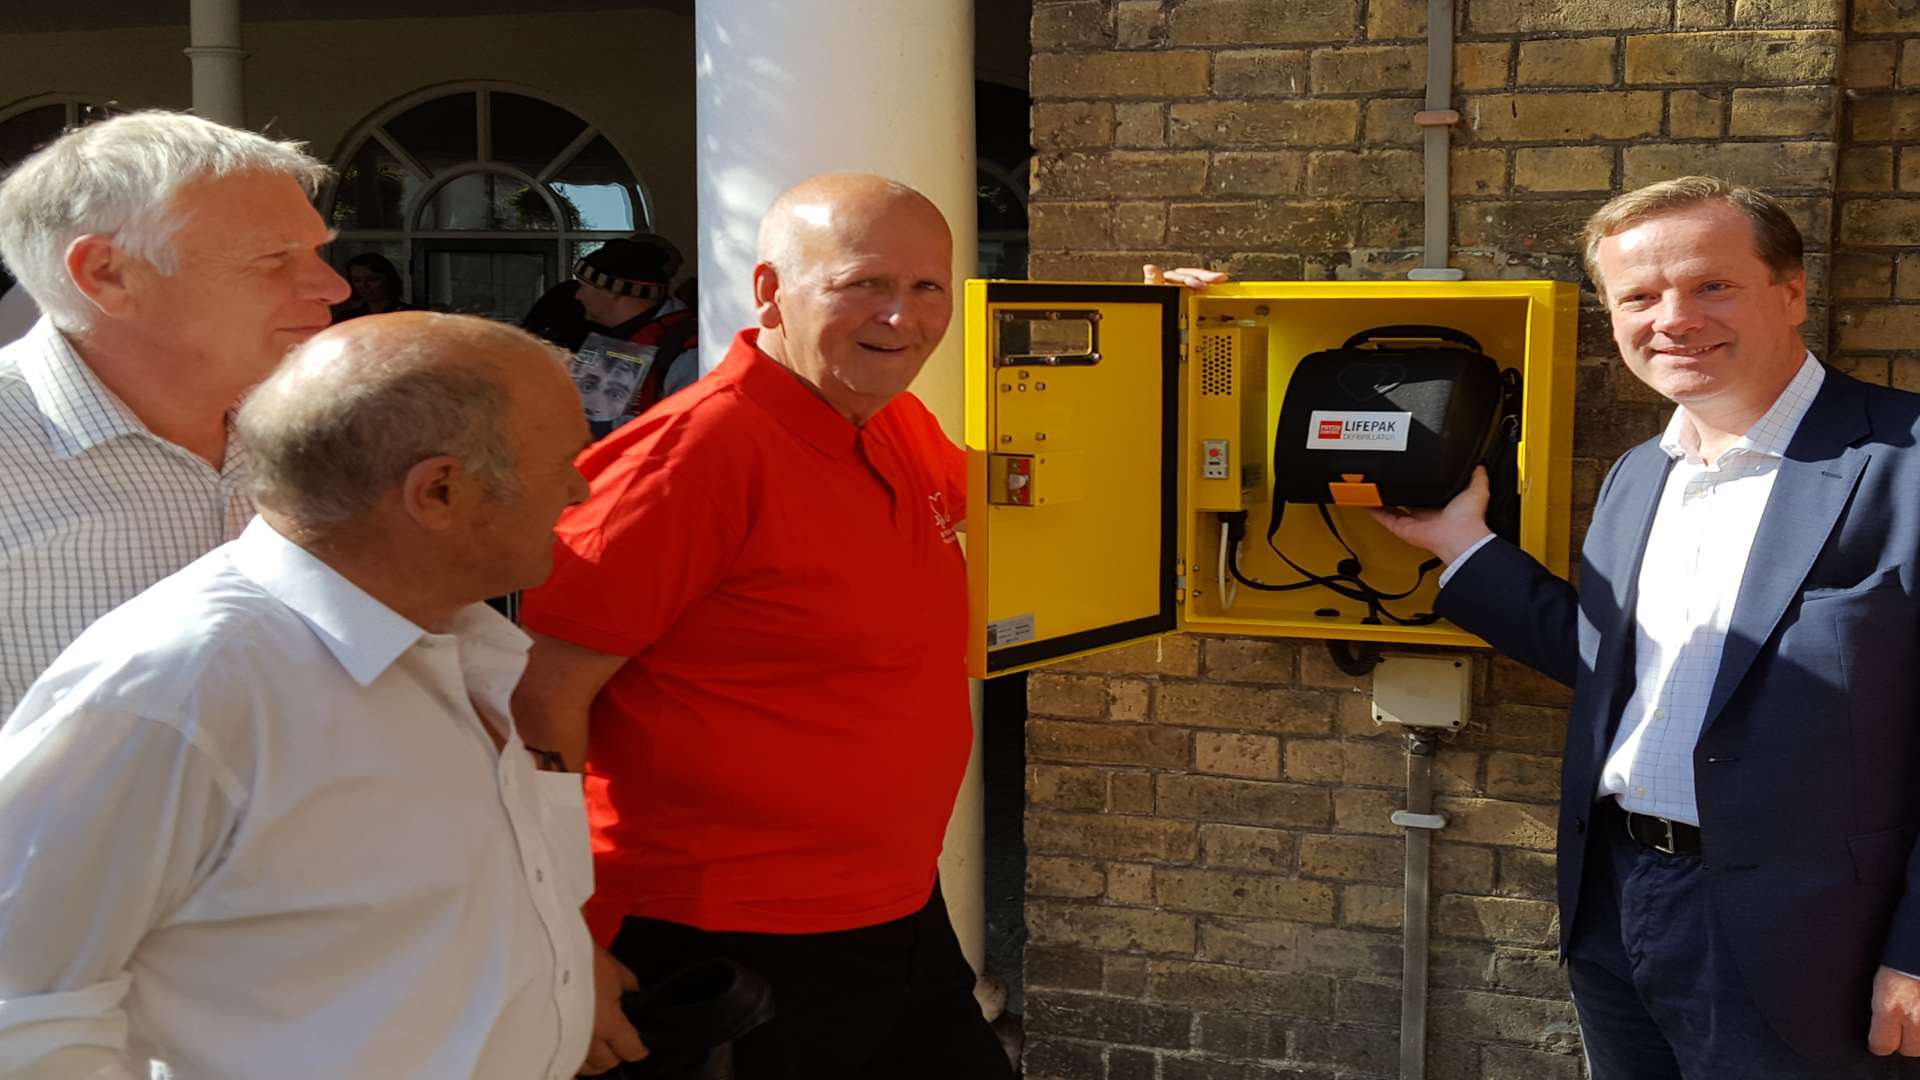 MP Charlie Elphicke MP, former mayor Adrian Friend, Cllr Wayne Elliott and Chaplain Paul Fermor take a look at the defibrillator